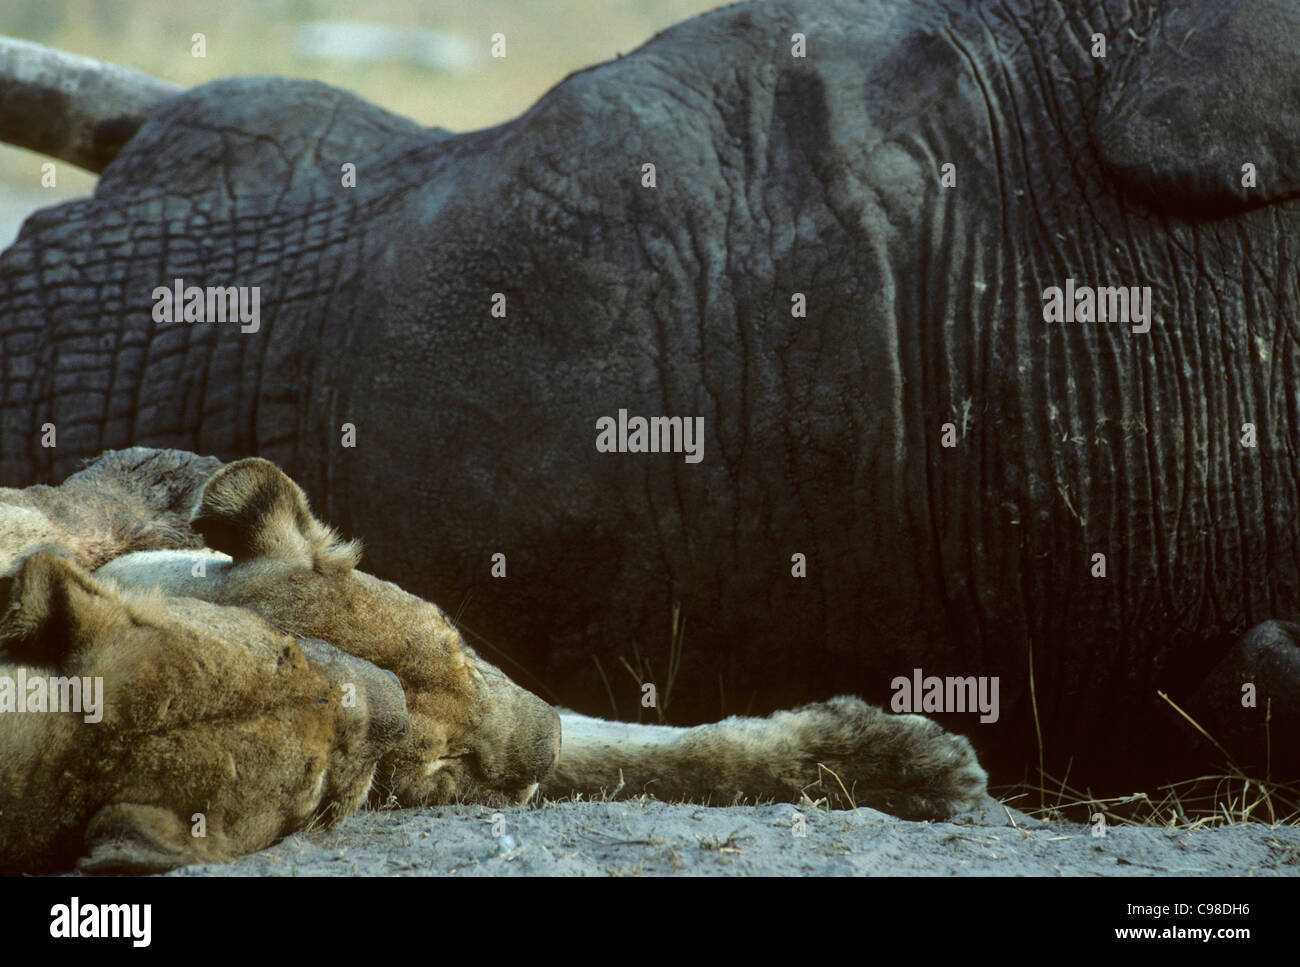 Lion (Panthera leo) de dormir à côté de la carcasse de l'éléphant Banque D'Images